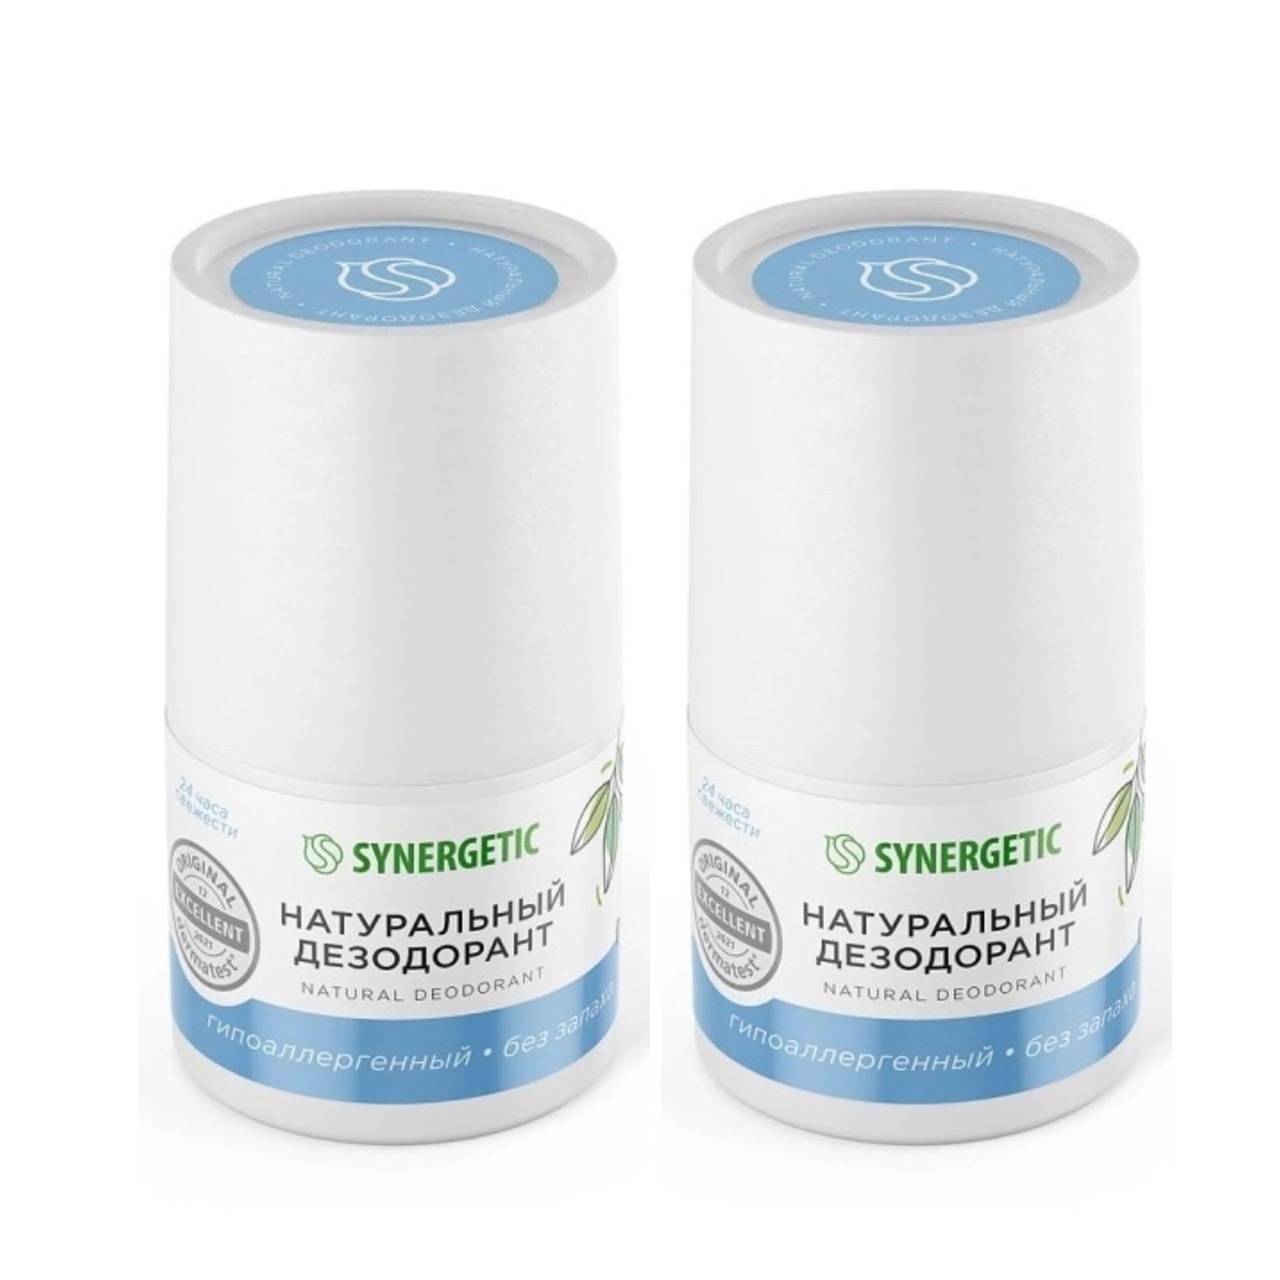 Натуральный дезодорант Synergetic без запаха 50 мл 2 шт synergetic натуральный дезодорант без запаха 50